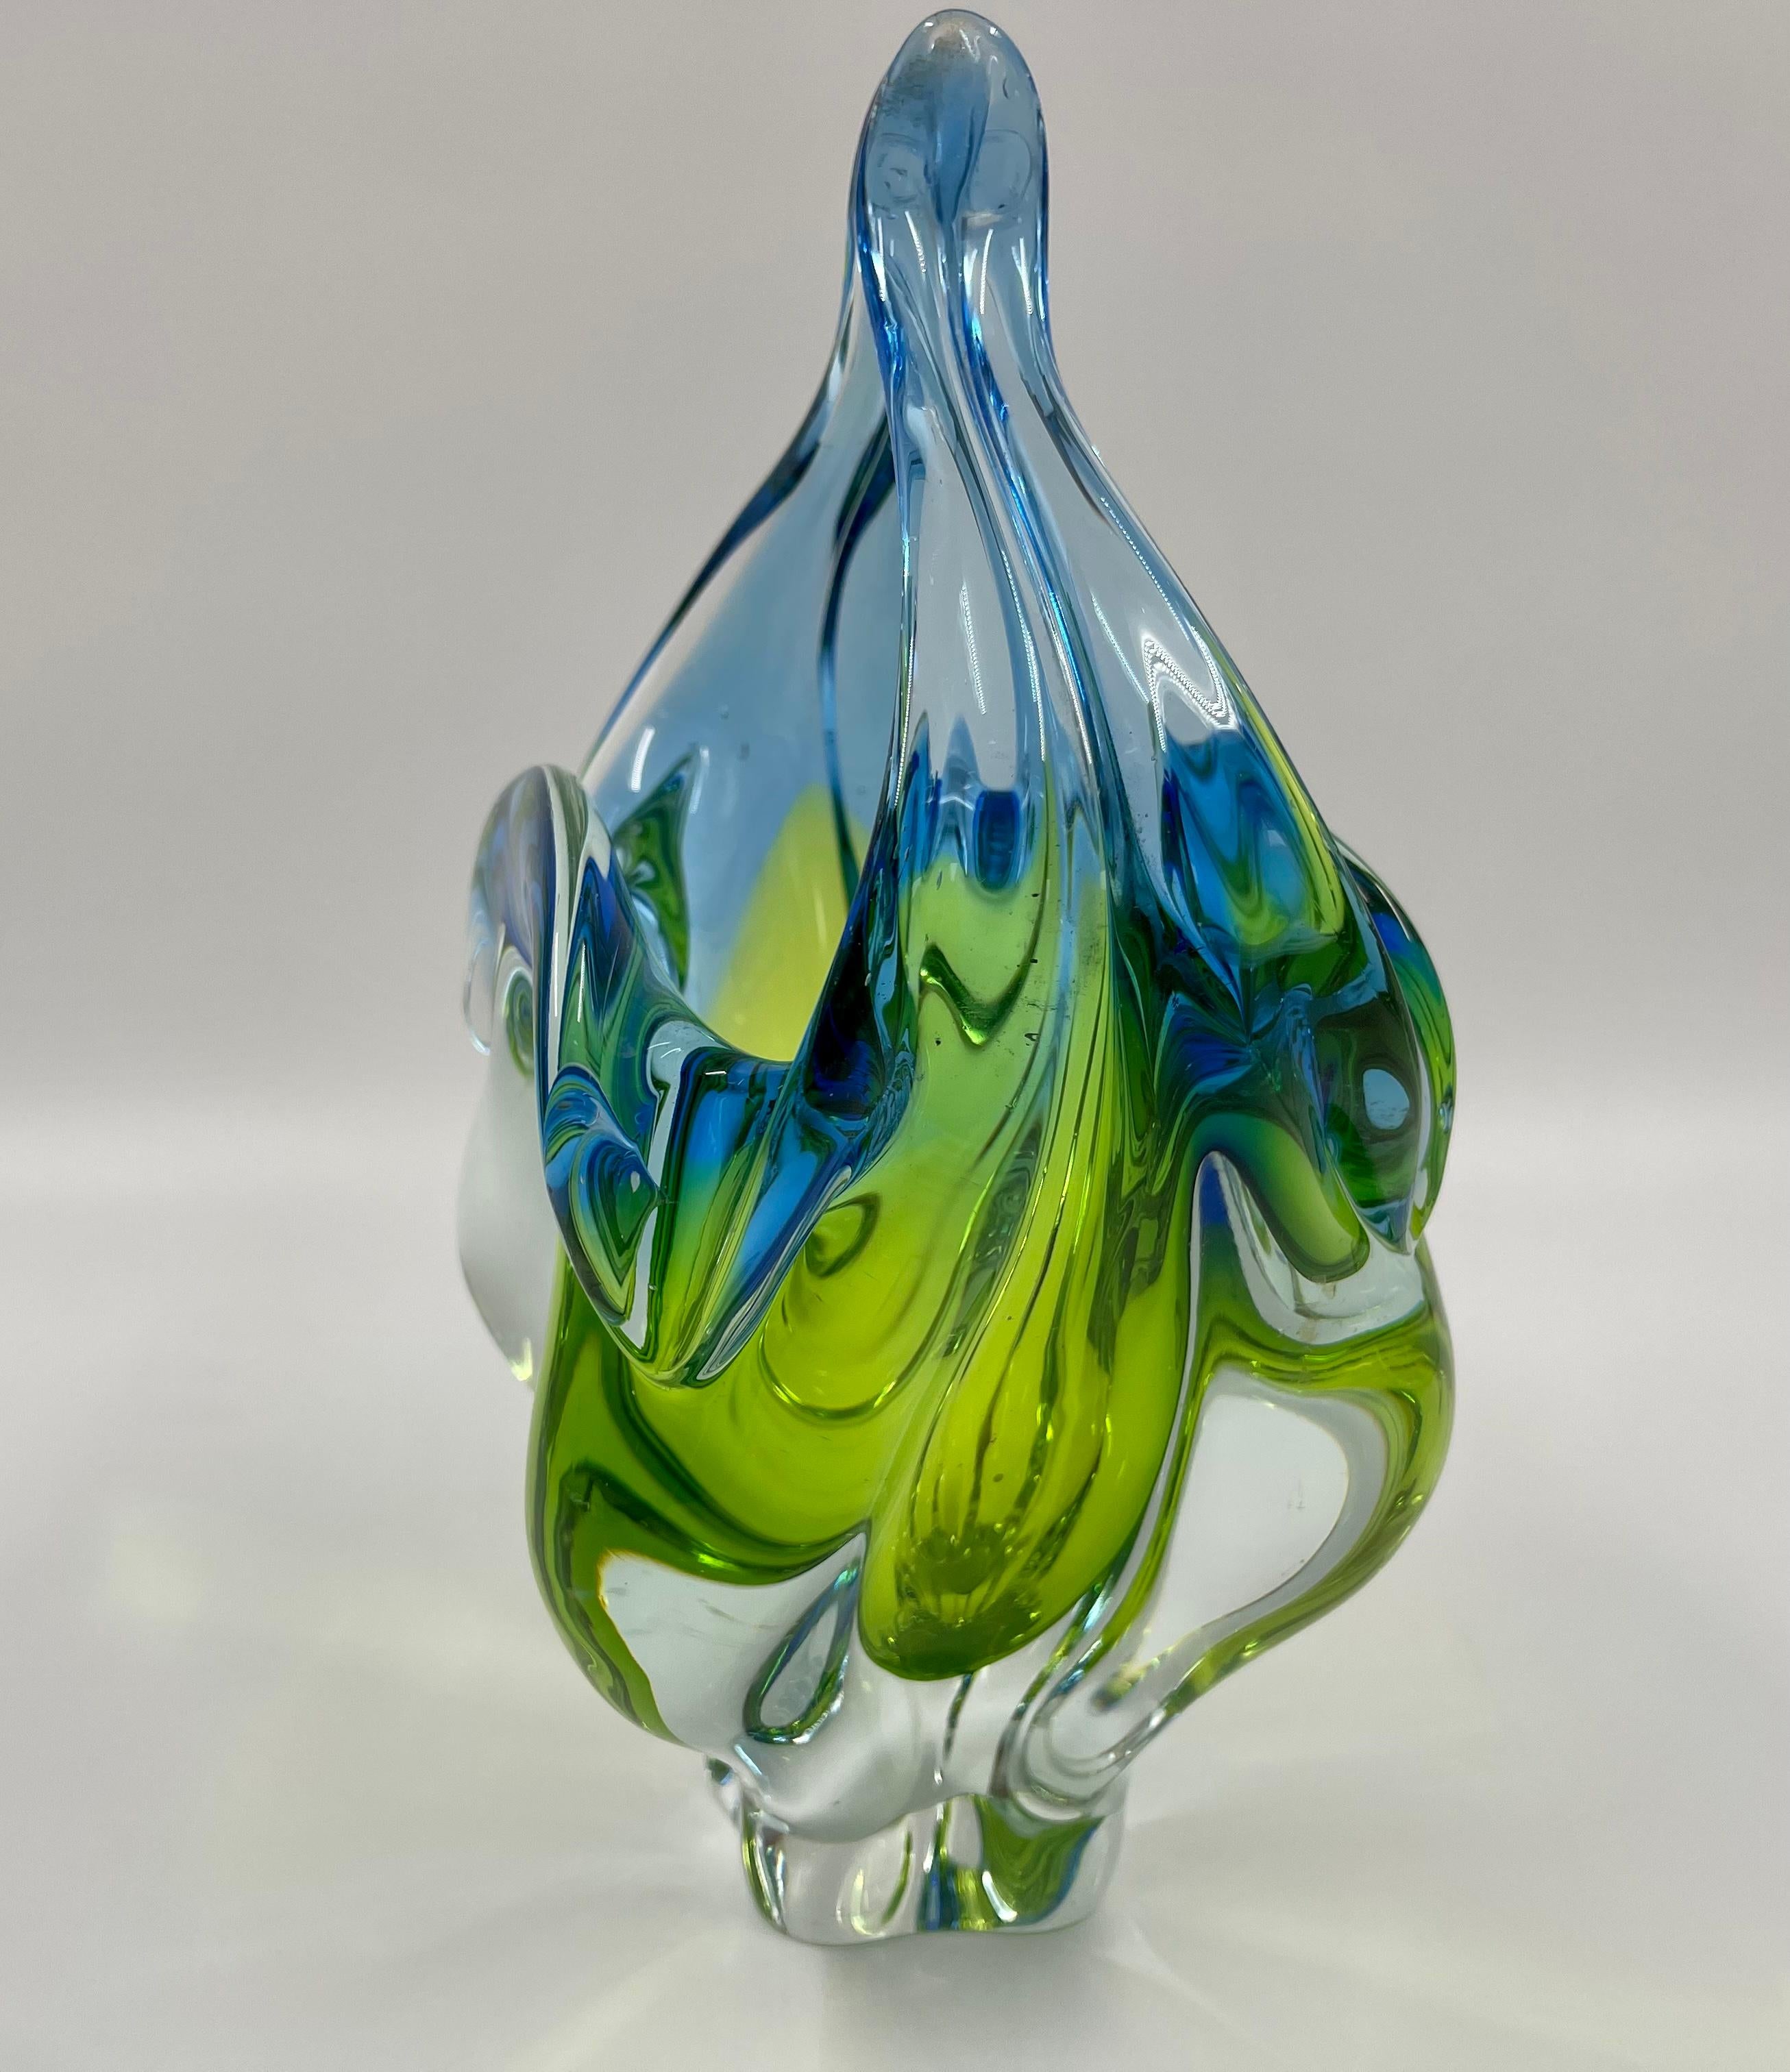 Il s'agit d'un bol/panier en verre d'art vintage fabriqué en Tchécoslovaquie et conçu par Josef Hospodka pour la verrerie Chribska vers 1960. Il s'agit d'un exemple exceptionnel de verre d'art fabriqué à Chřibská, en Tchécoslovaquie. Le bol/panier